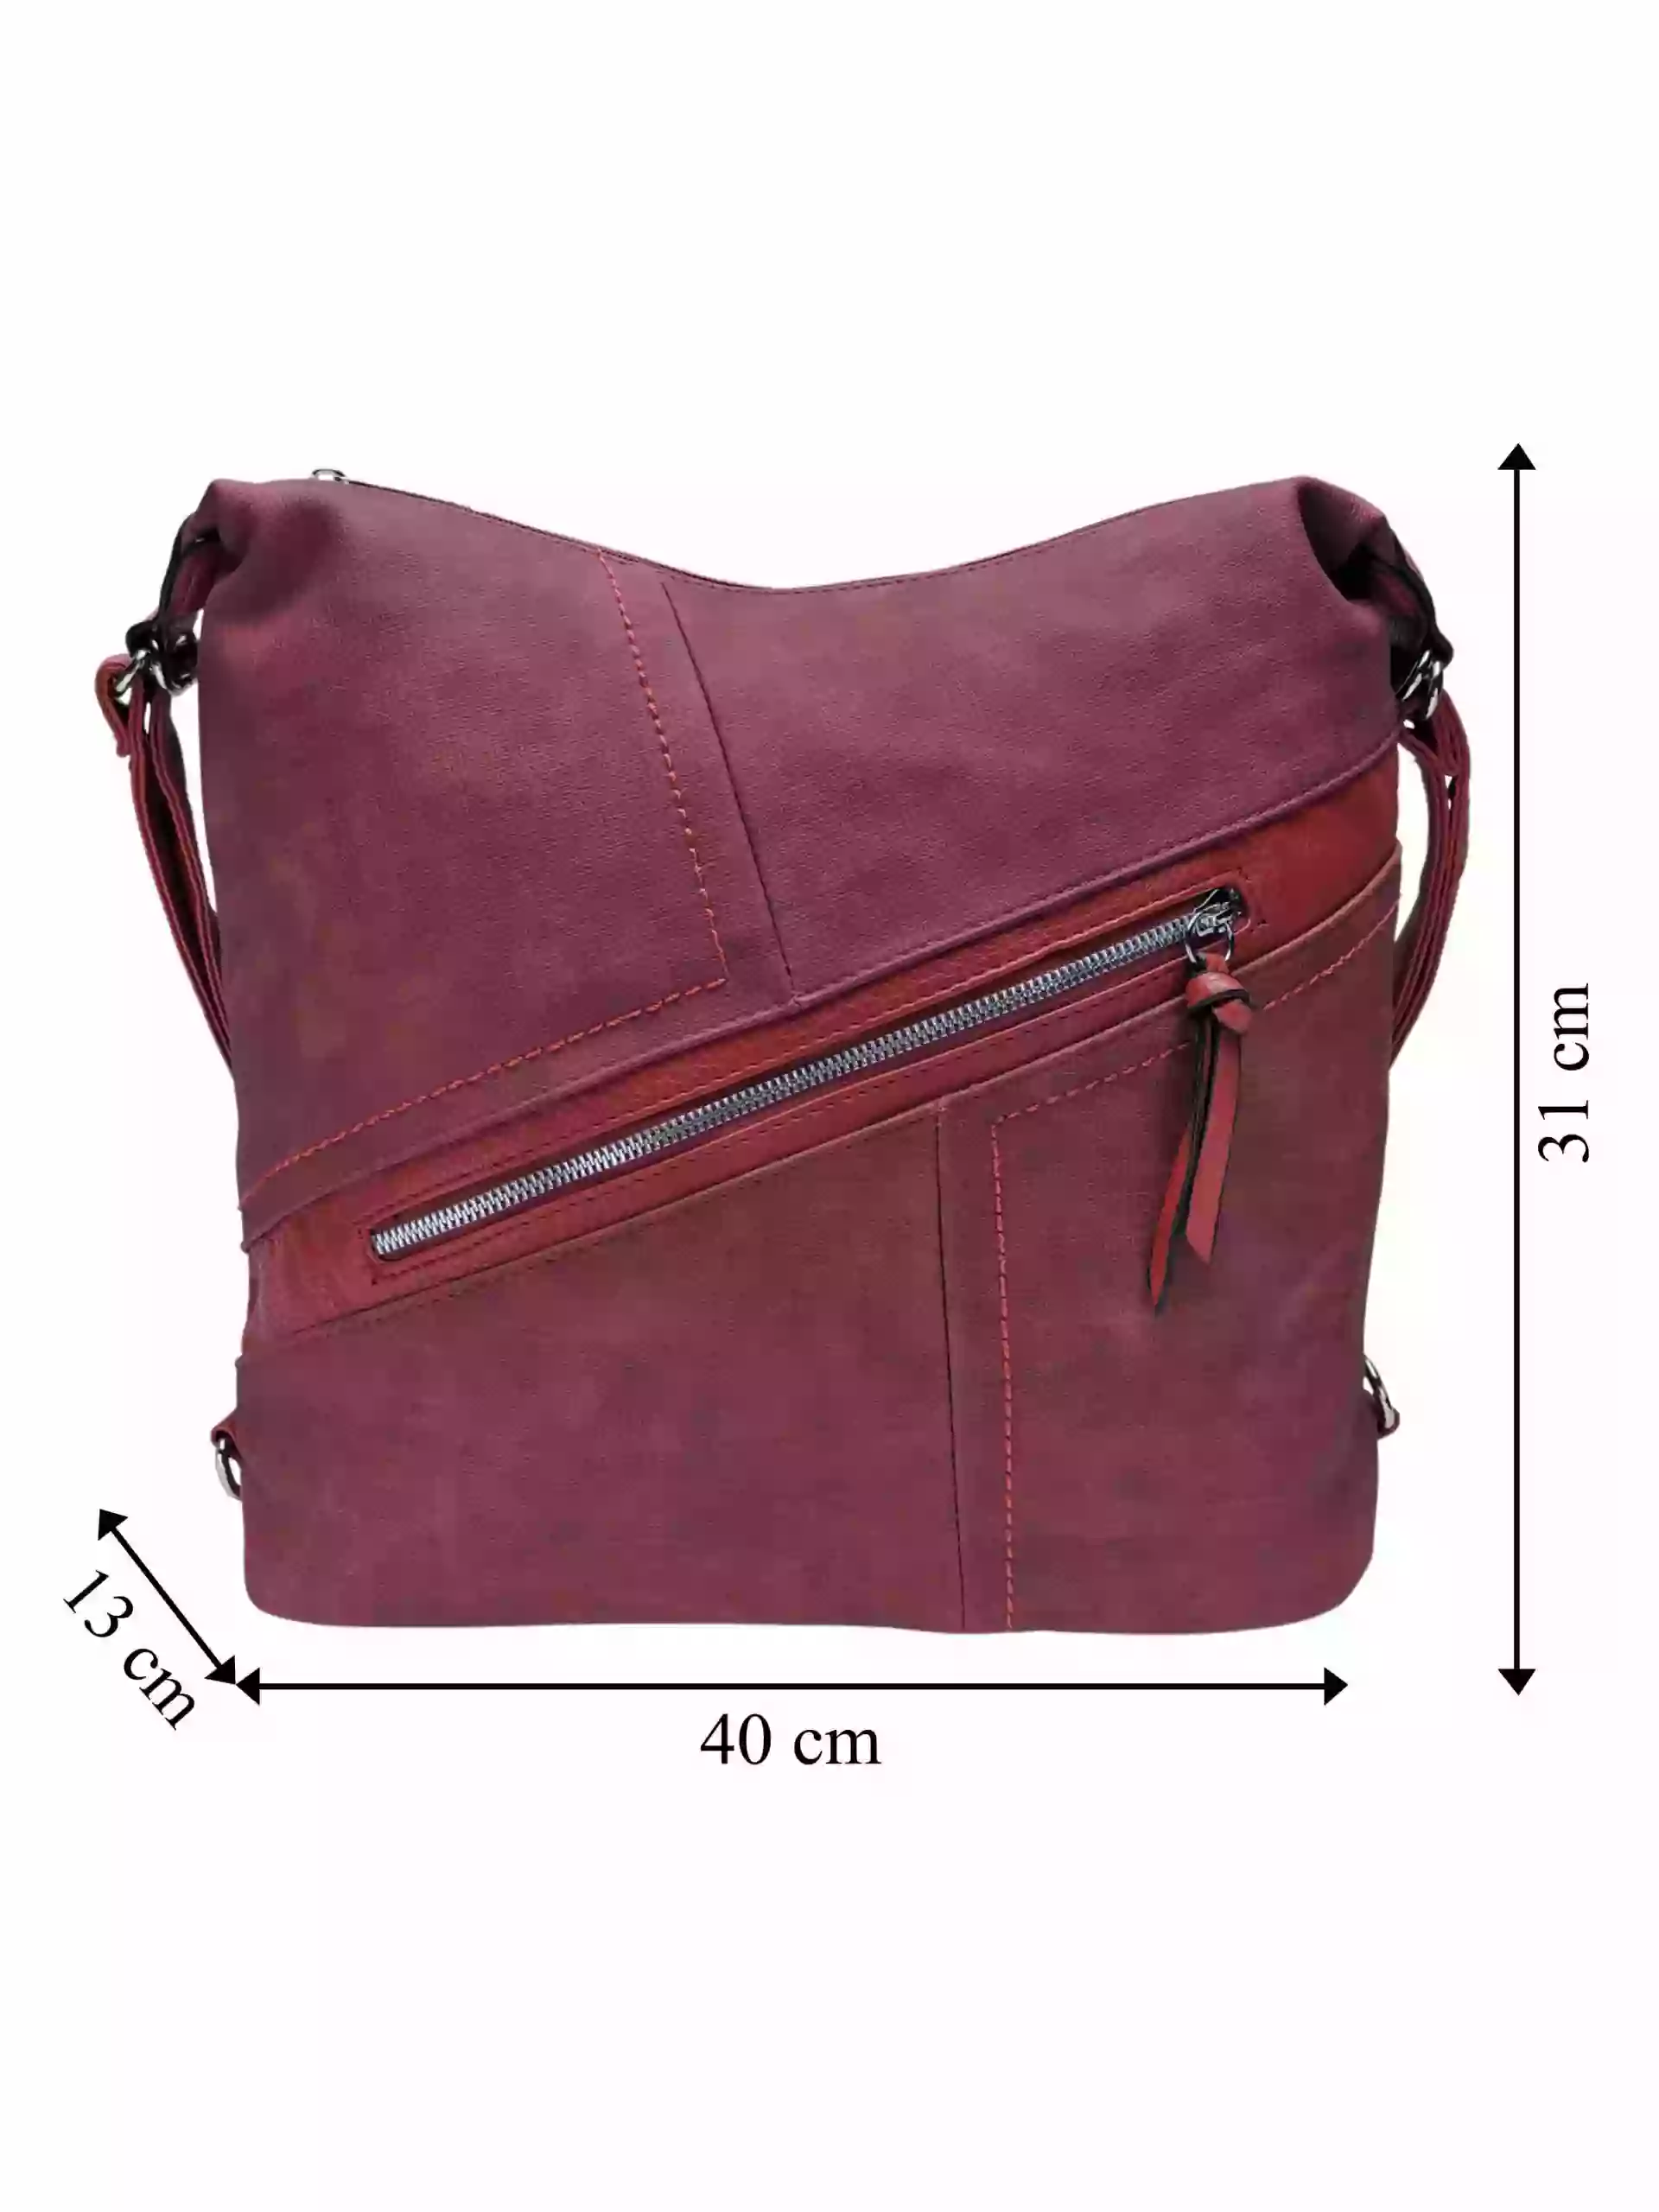 Velký vínový/bordó kabelko-batoh s šikmou kapsou, Tapple, H18077N, přední strana kabelko-batohu 2v1 s rozměry